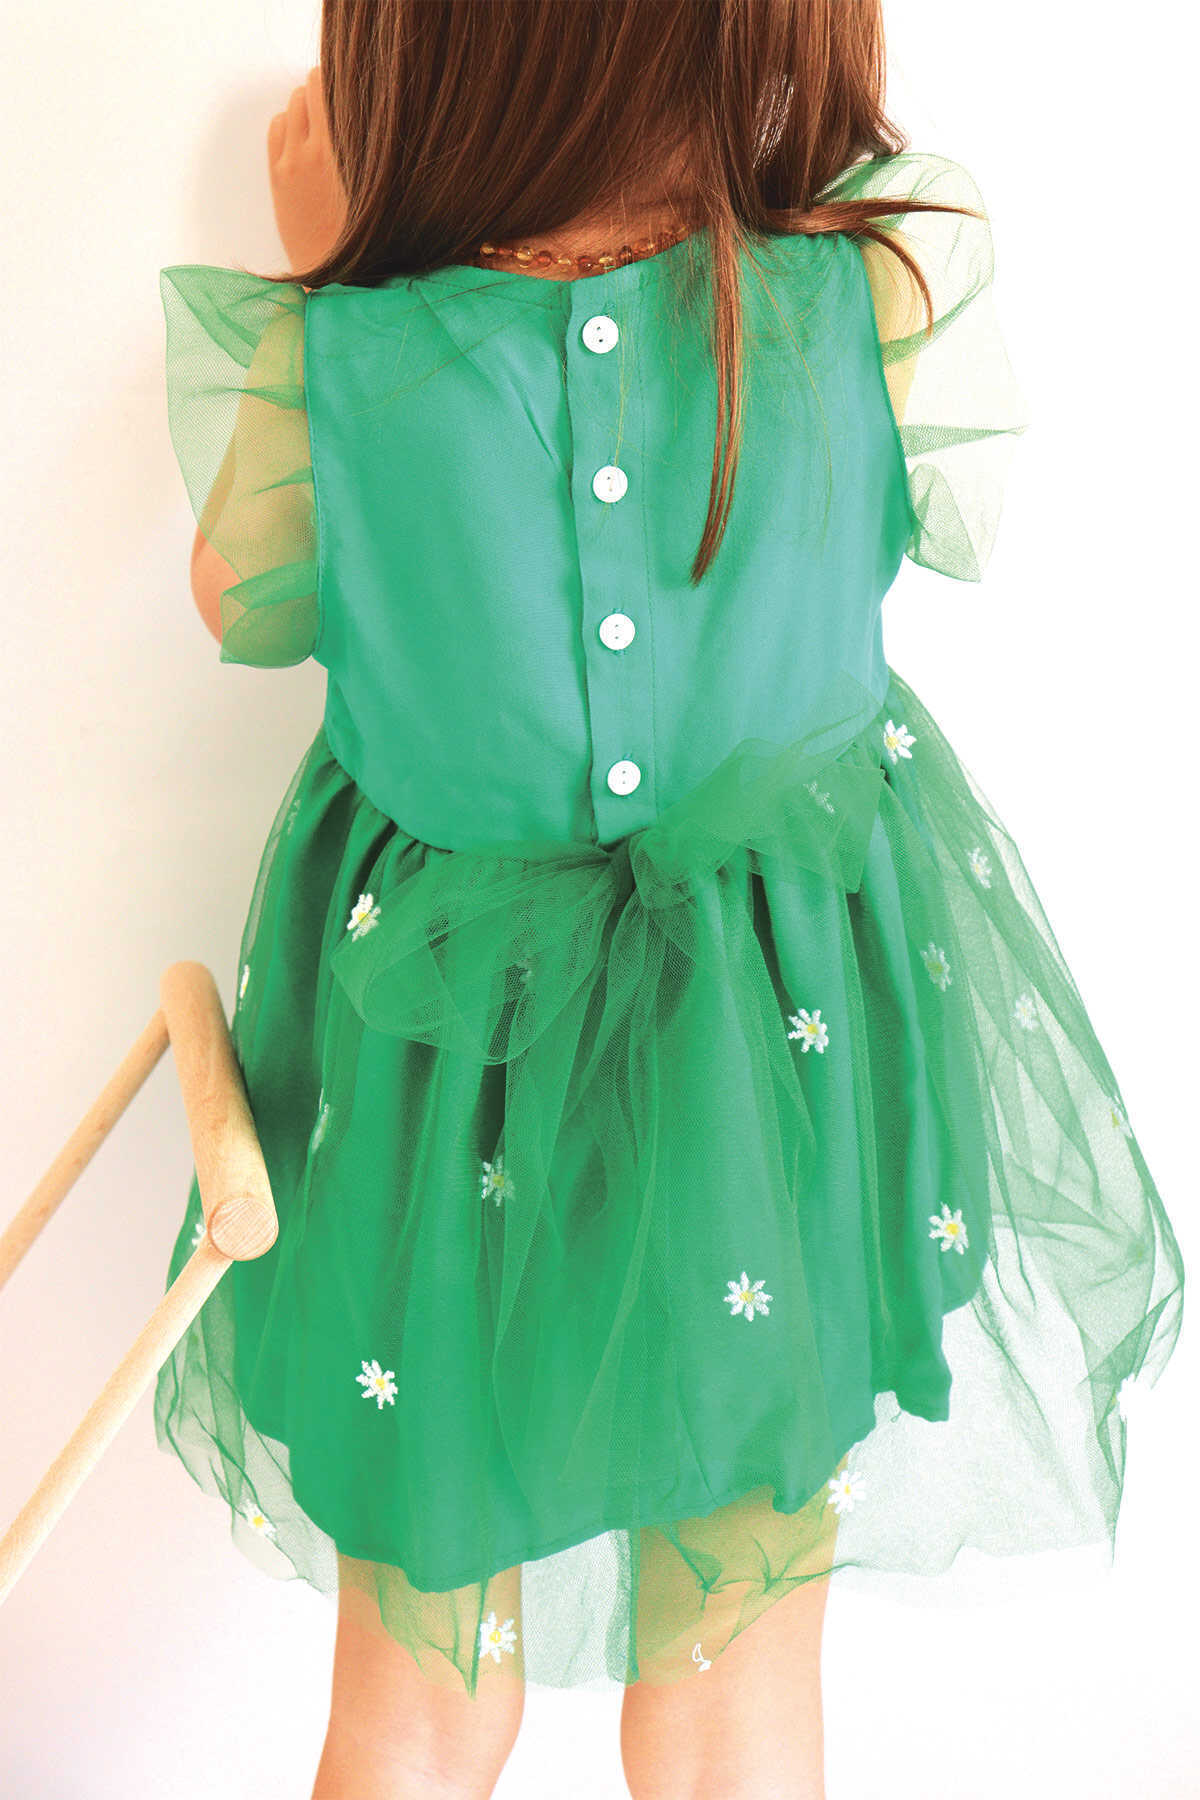 Papatya Nakışlı Yeşil Tül Elbise